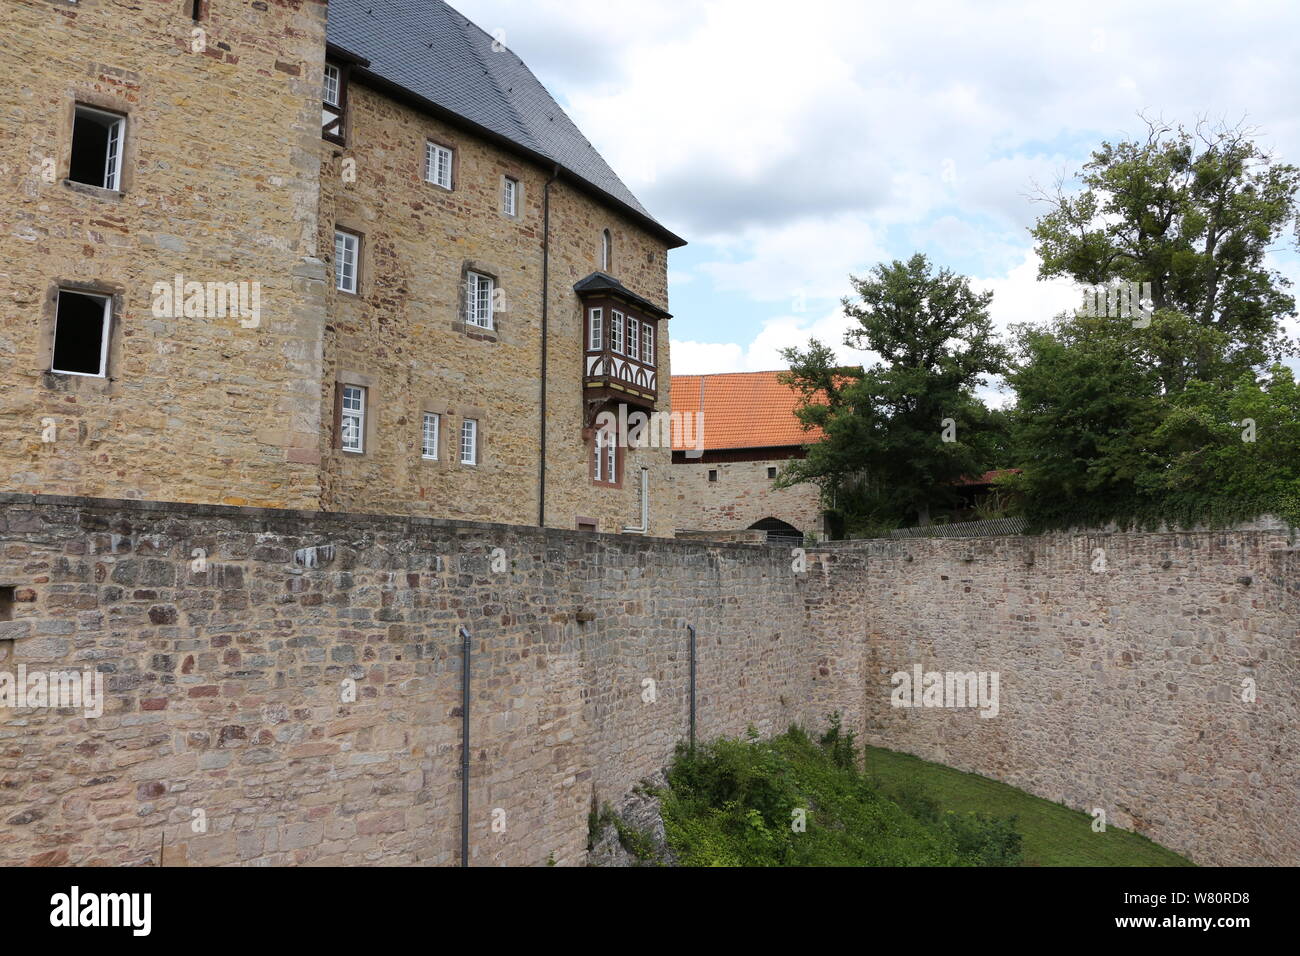 Blick auf das Schloss Spangenberg in Nordhessen Foto Stock